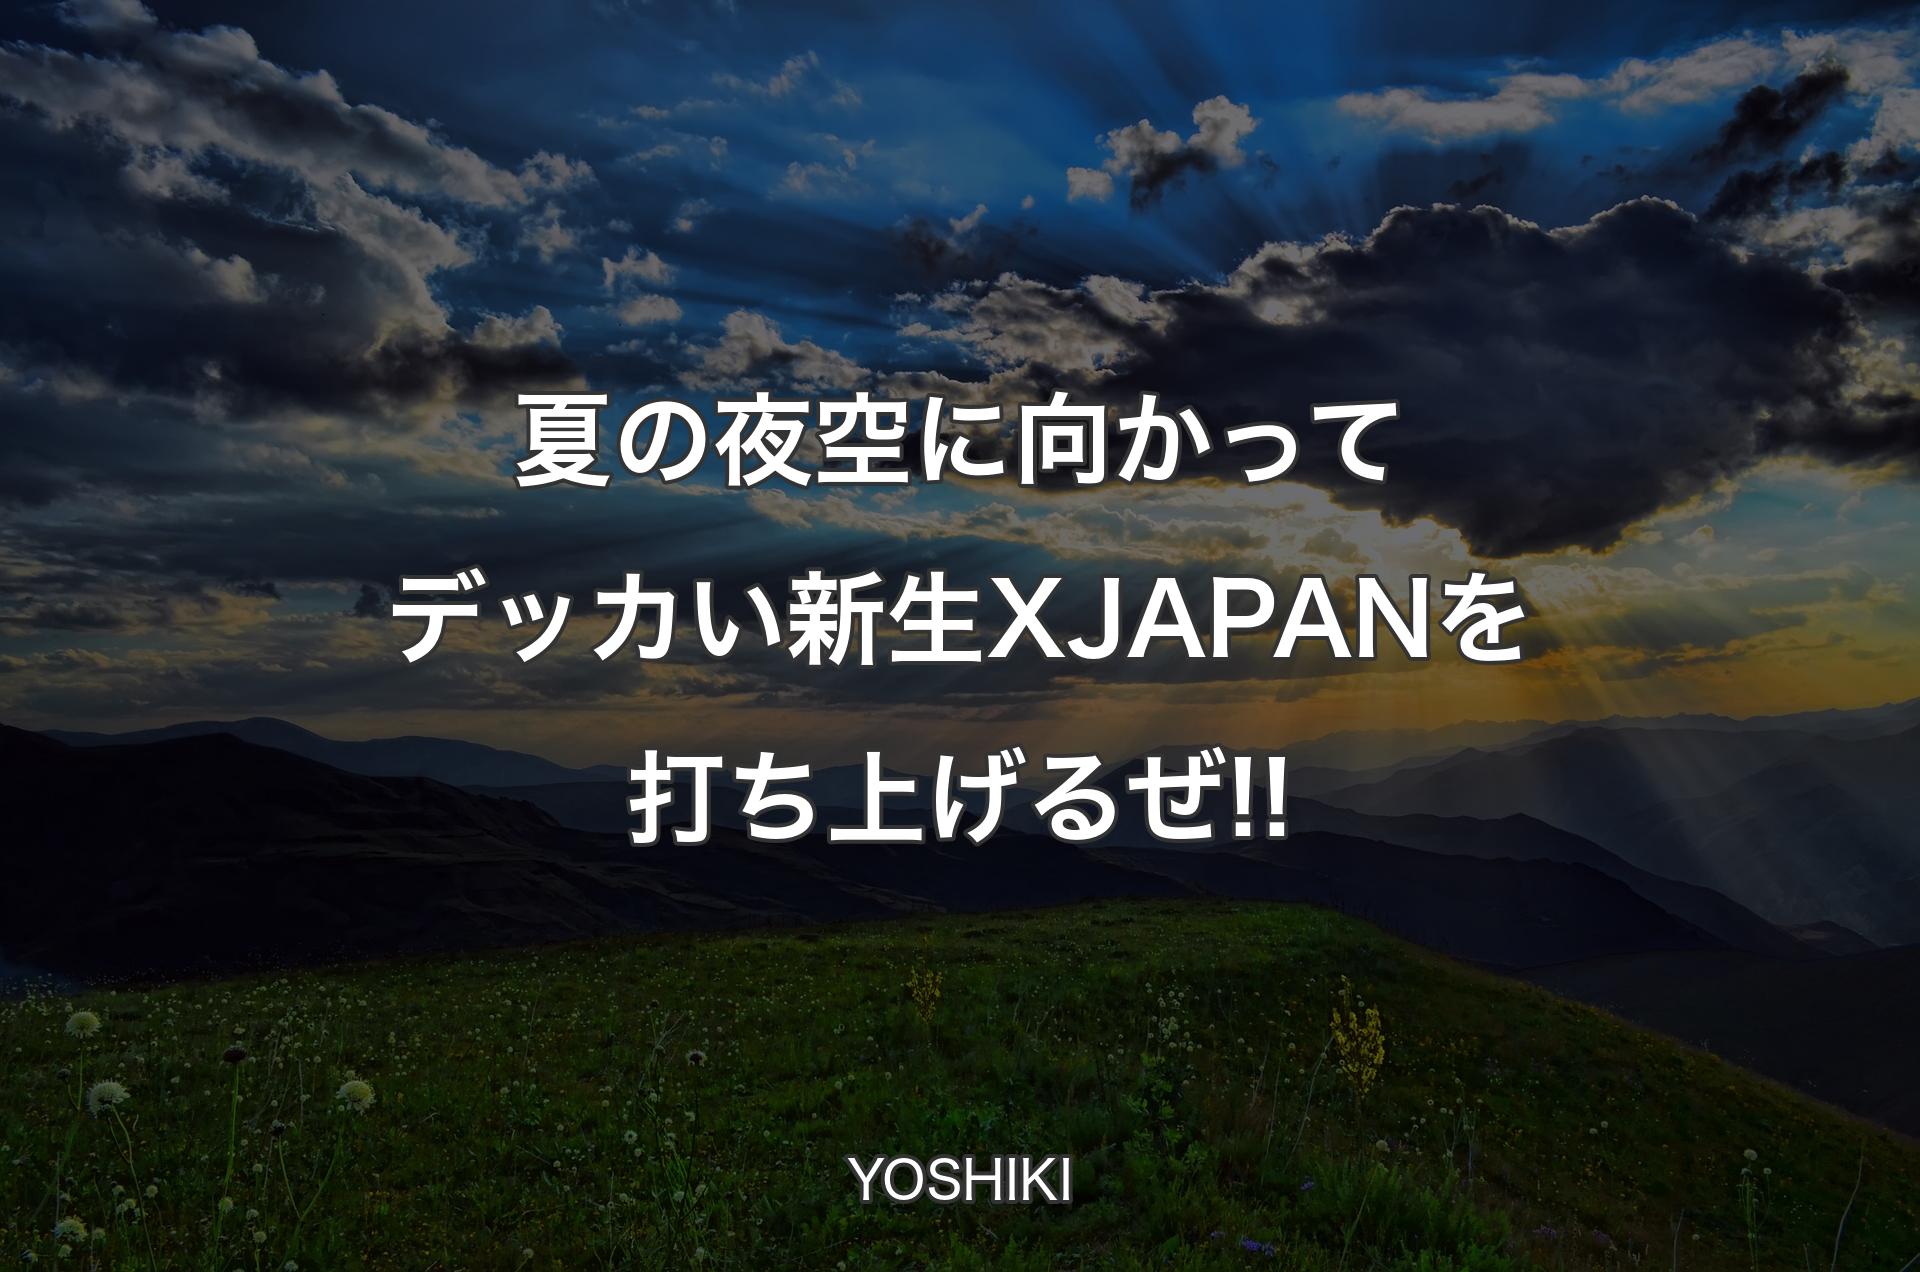 夏の夜空に向かってデッカい新生X JAPANを打ち上げるぜ!! - YOSHIKI